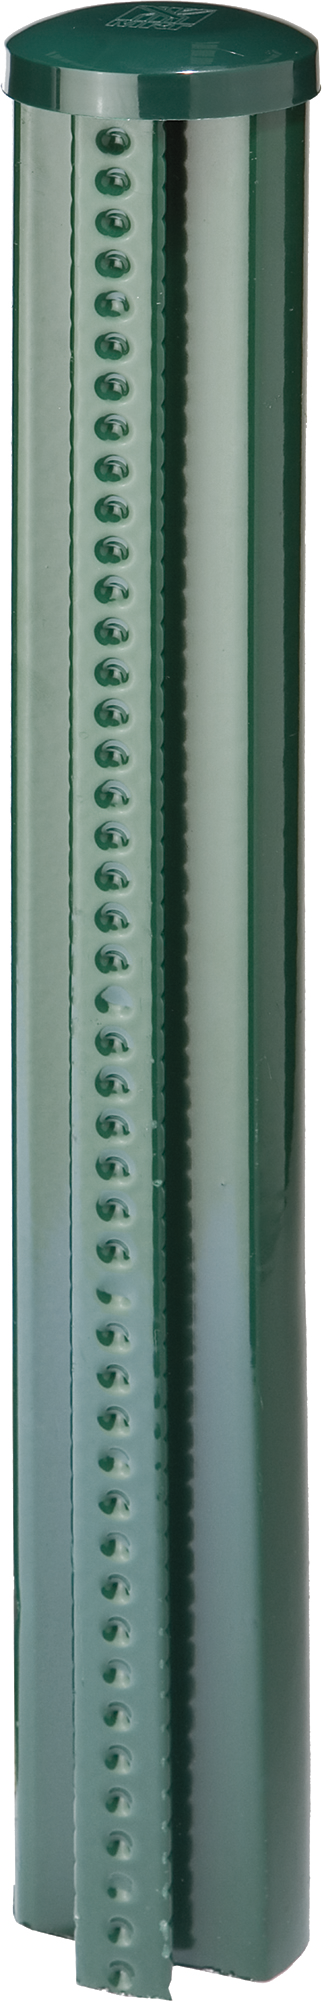 Poste quickfix de acero y pvc verde quickfix de 48mm y 130 cm